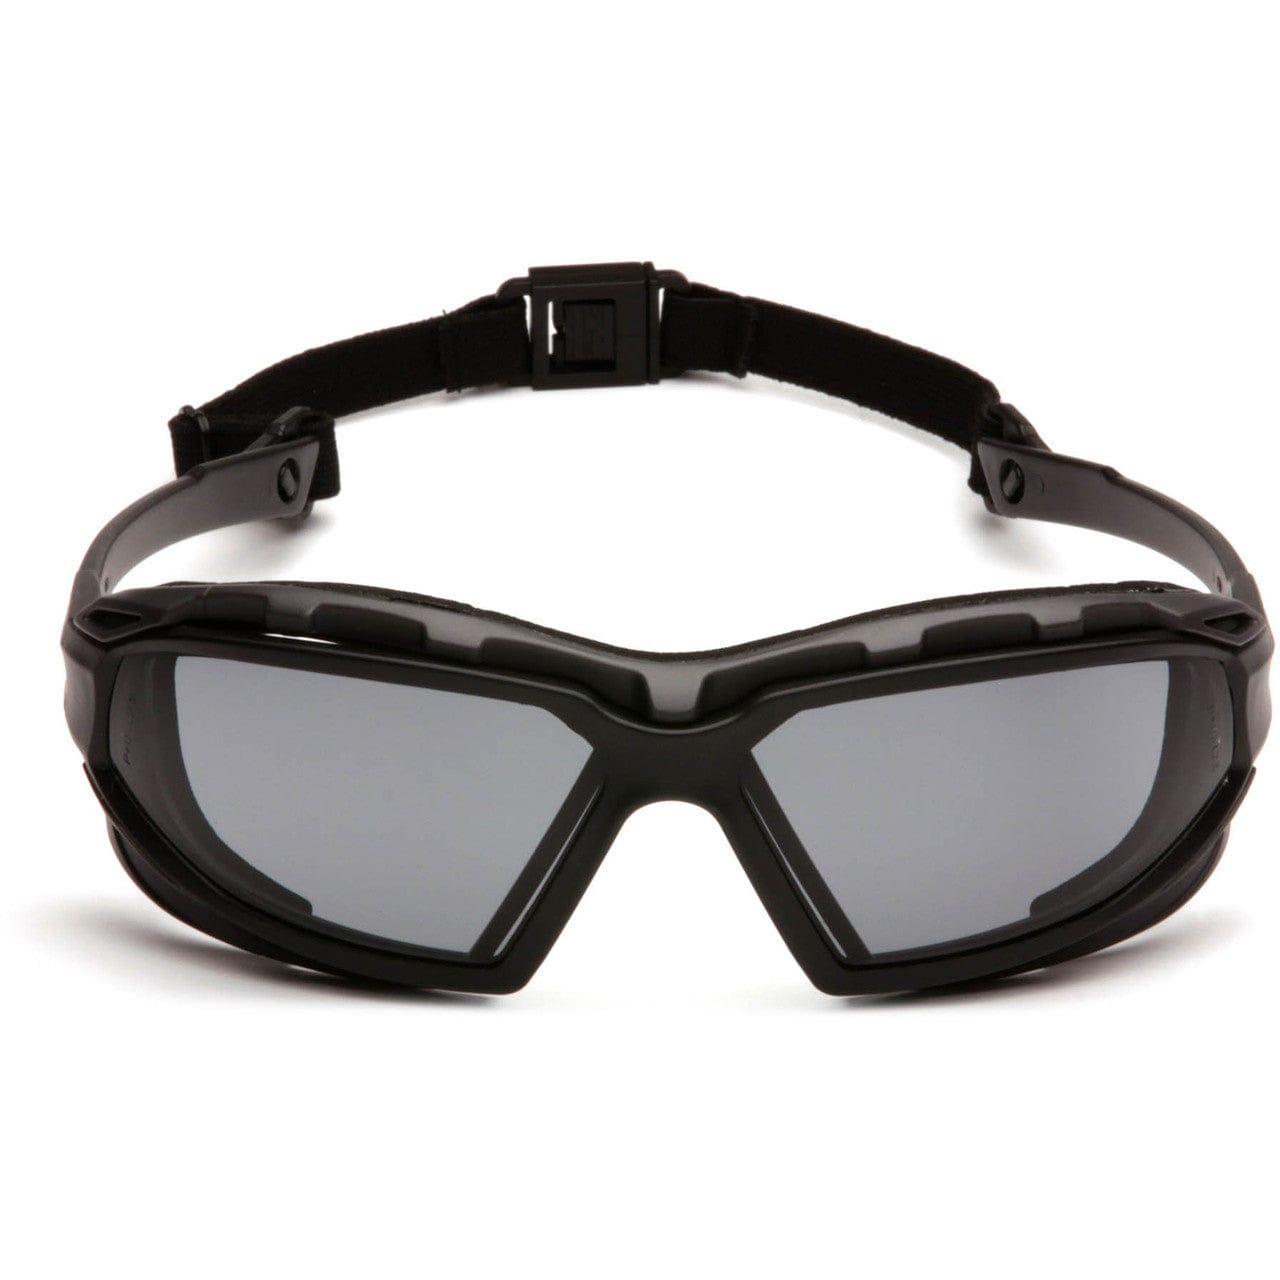 Pyramex Highlander Plus Safety Glasses Black Foam-Lined Frame Gray Anti-Fog Lens SBG5020DT Front